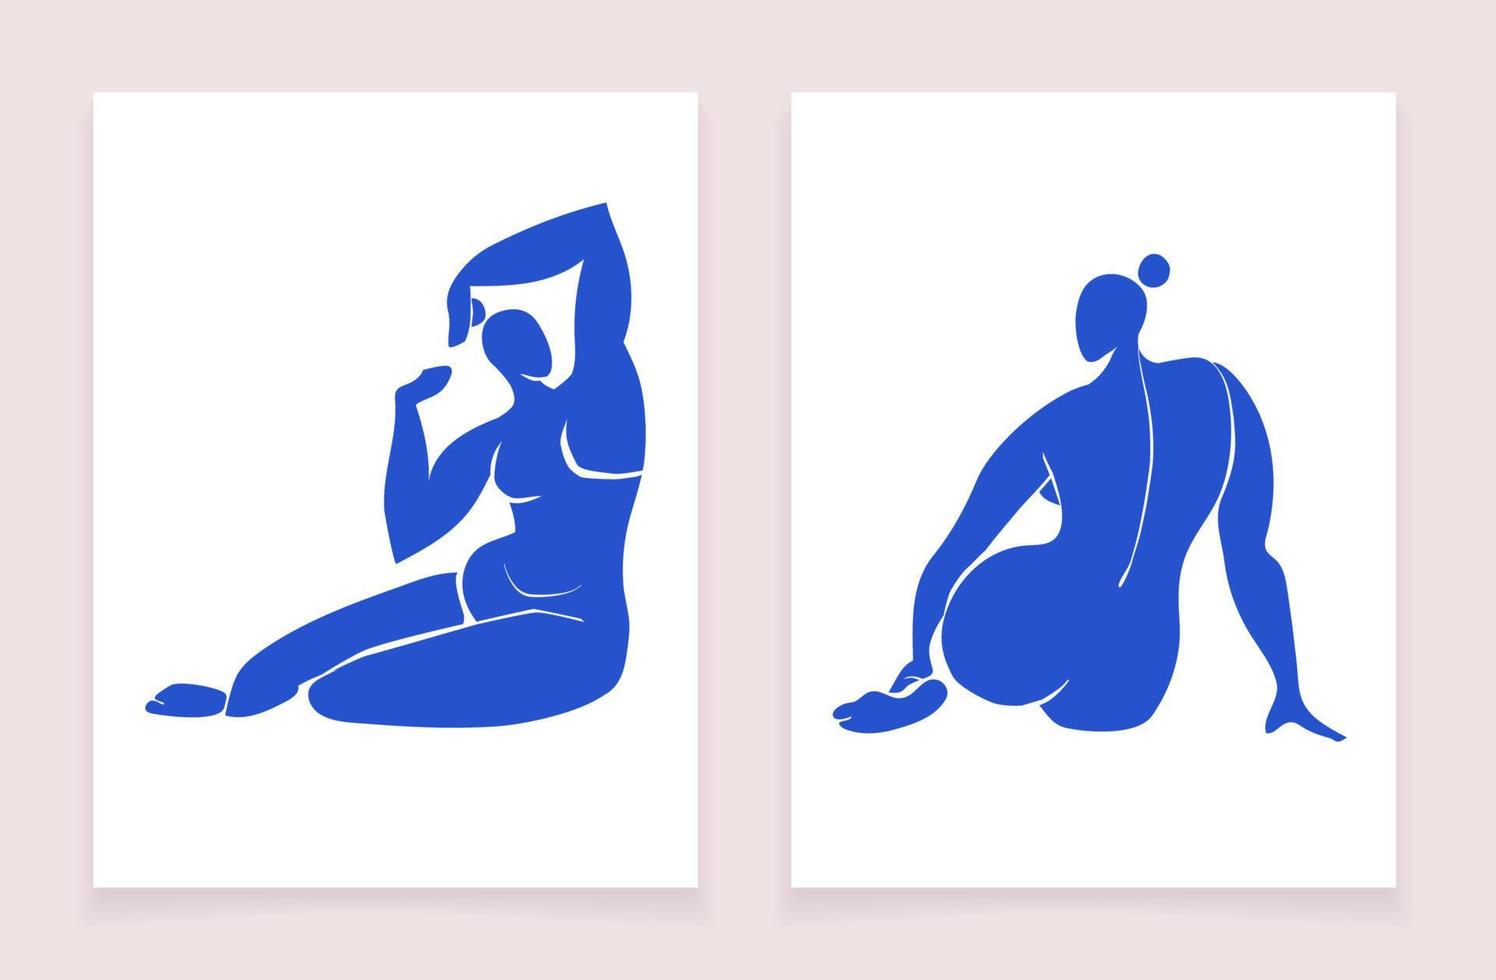 trendige poster mit blauen weiblichen körpern inspiriert von matisse. Schneiden Sie weibliche Figuren in verschiedenen Posen auf einem weißen Hintergrund aus. vektorillustration einer postkarte in einem minimalen stil. vektor